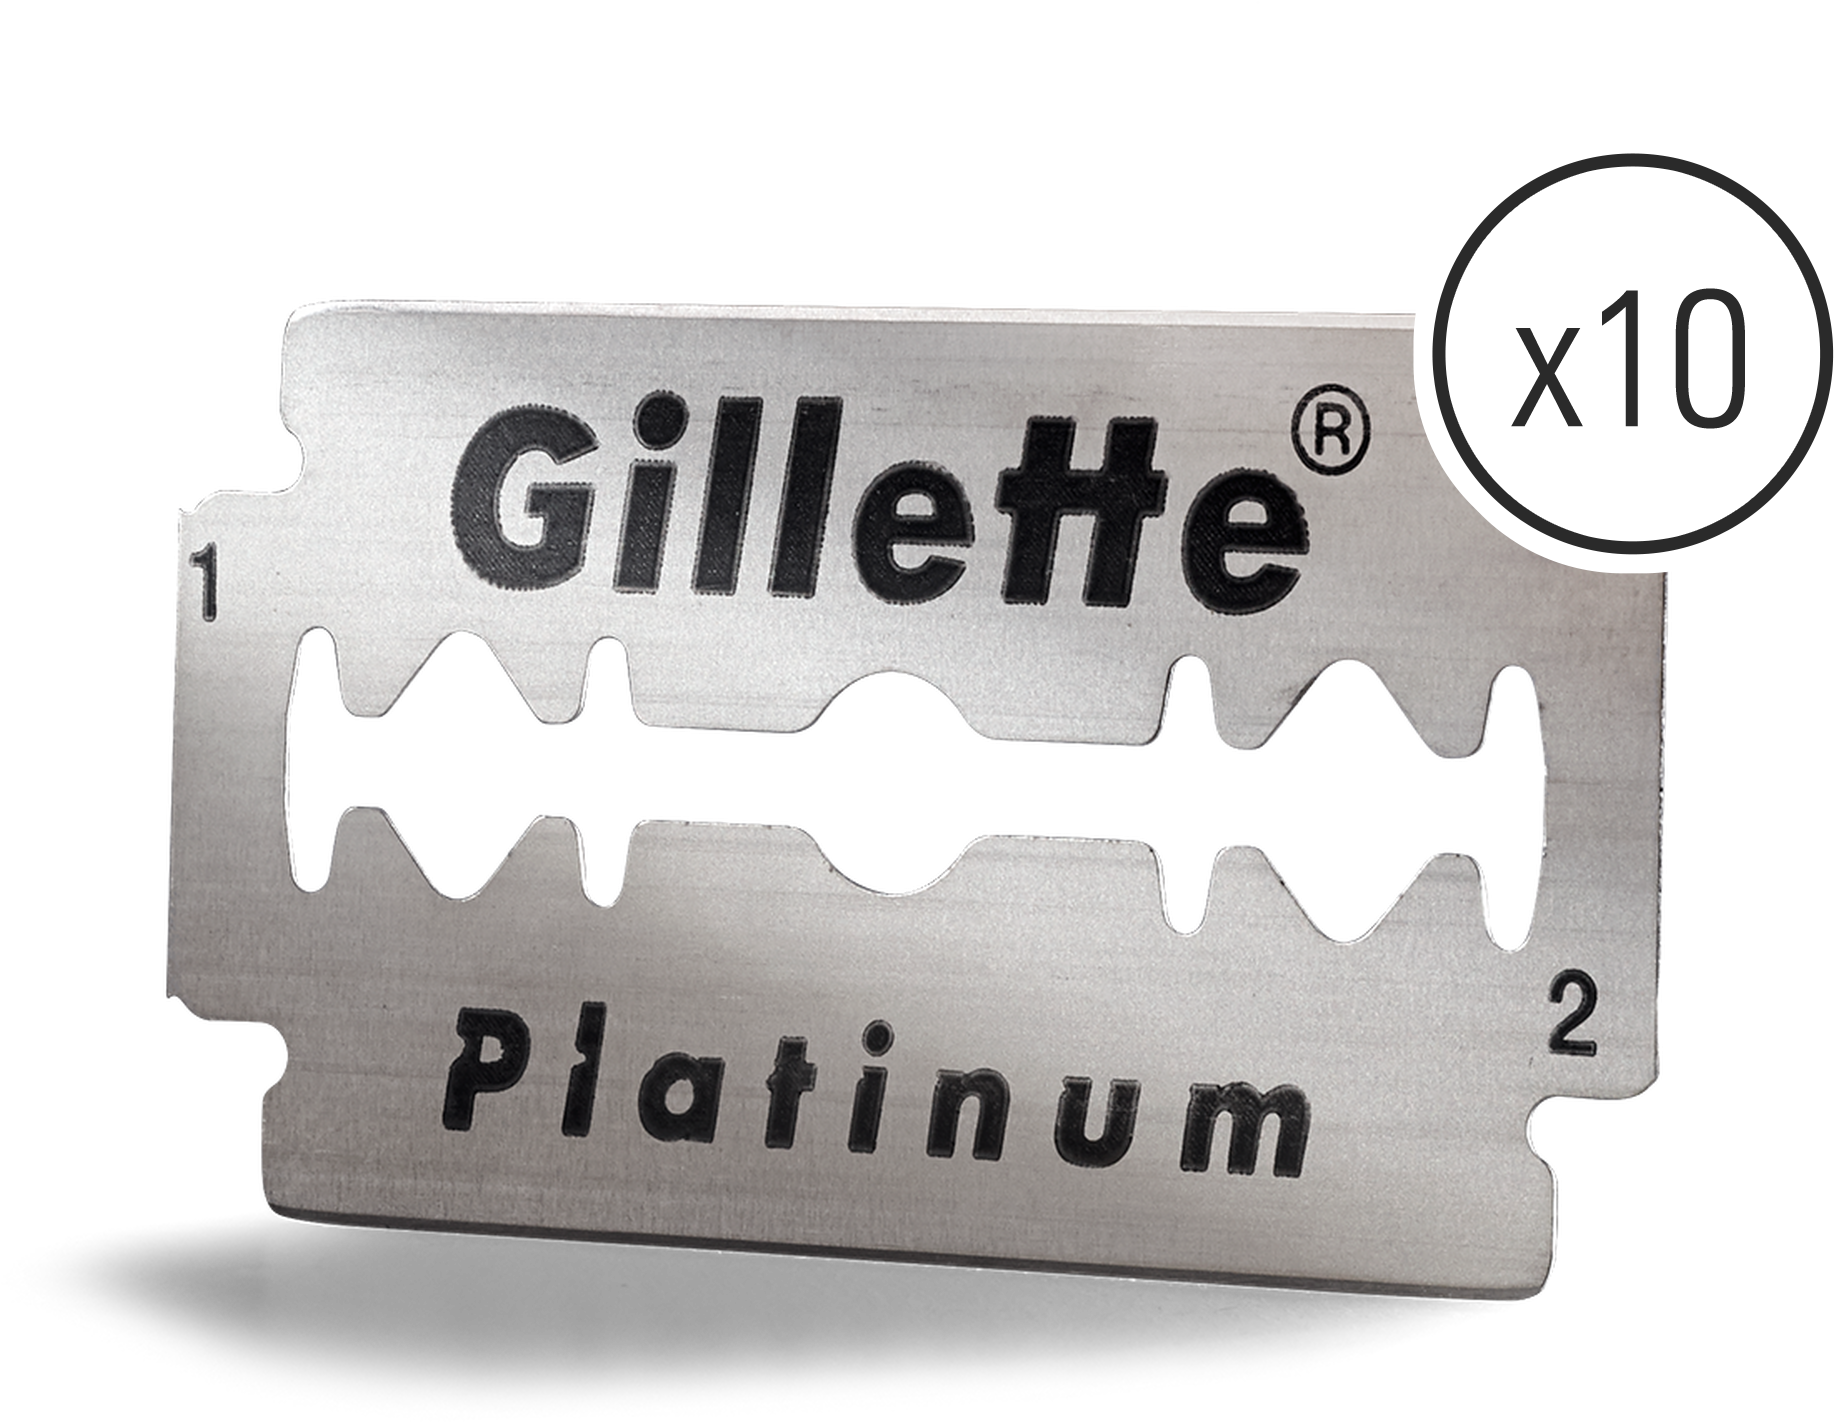 Gillette Blade